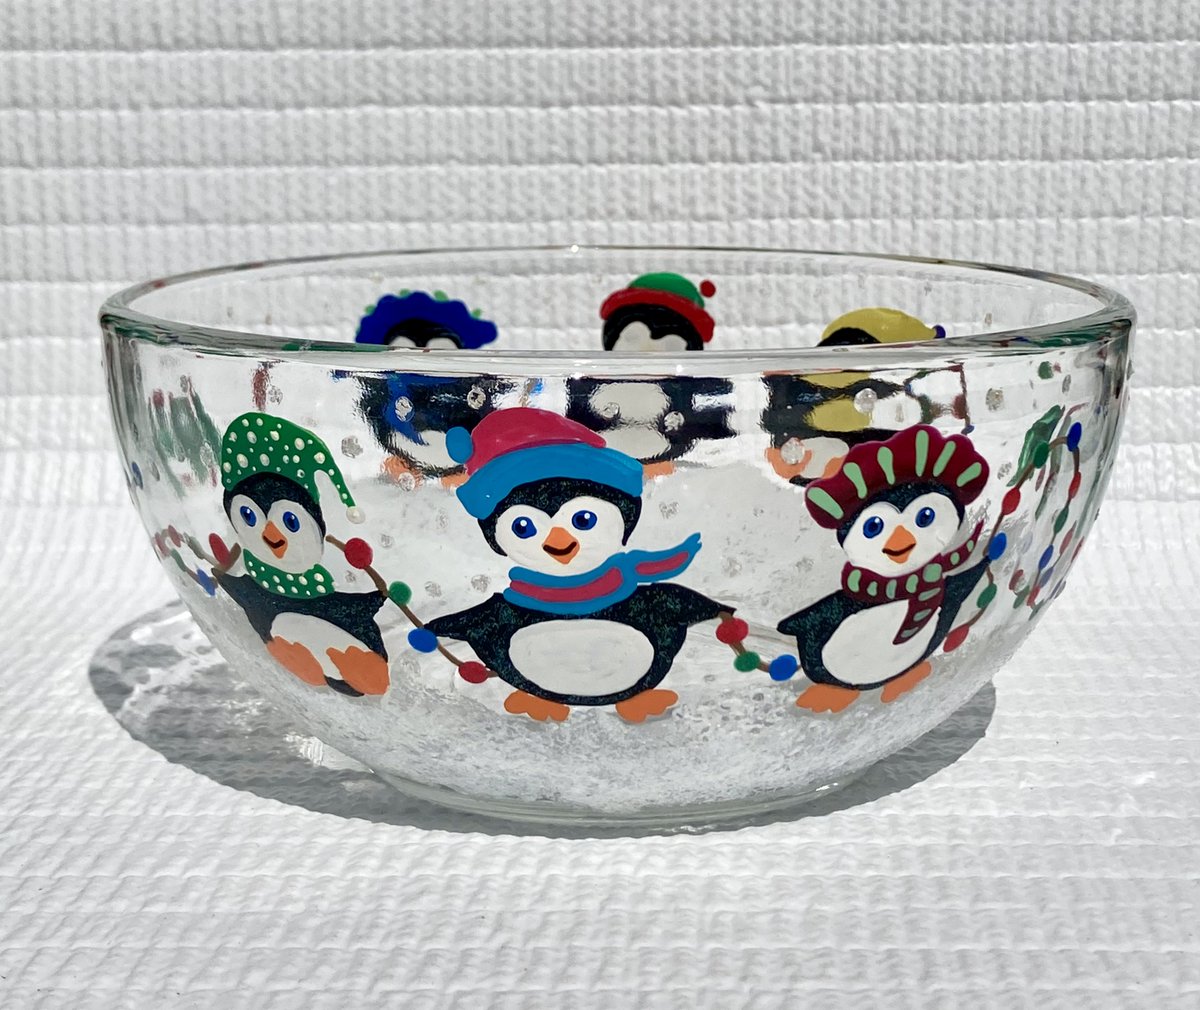 Ice skating penguins etsy.com/listing/158469… #penguins #candydish #candybowl #SMILEtt23 #christmasdecor #christmasgift #CraftBizParty #homedecor #giftsforher